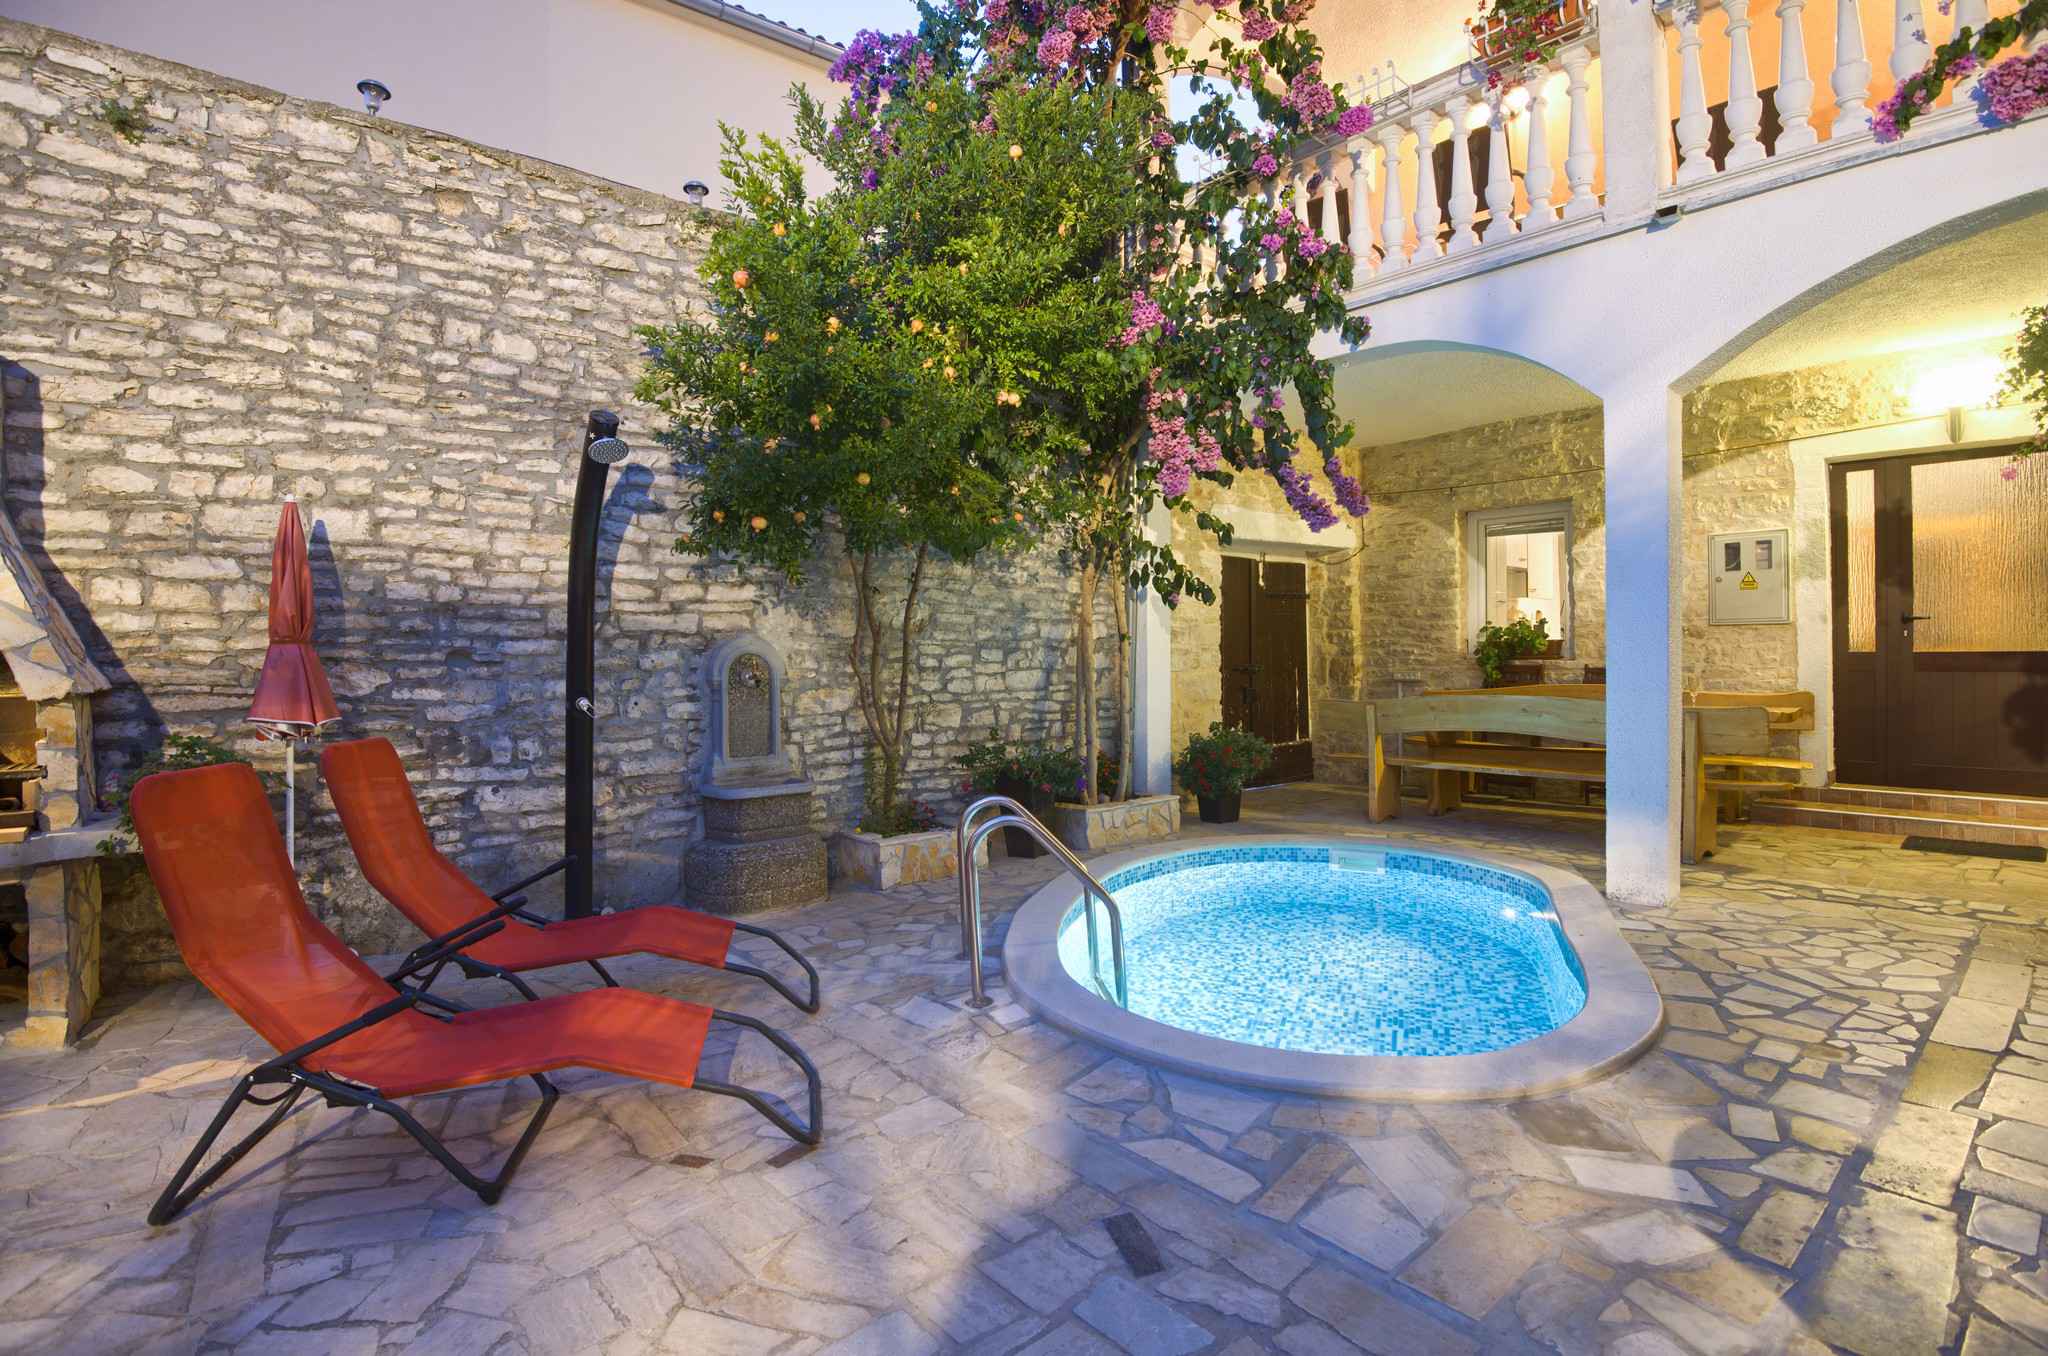 Ferienwohnung mit WiFi, Pool und Gartengrill  in Istrien